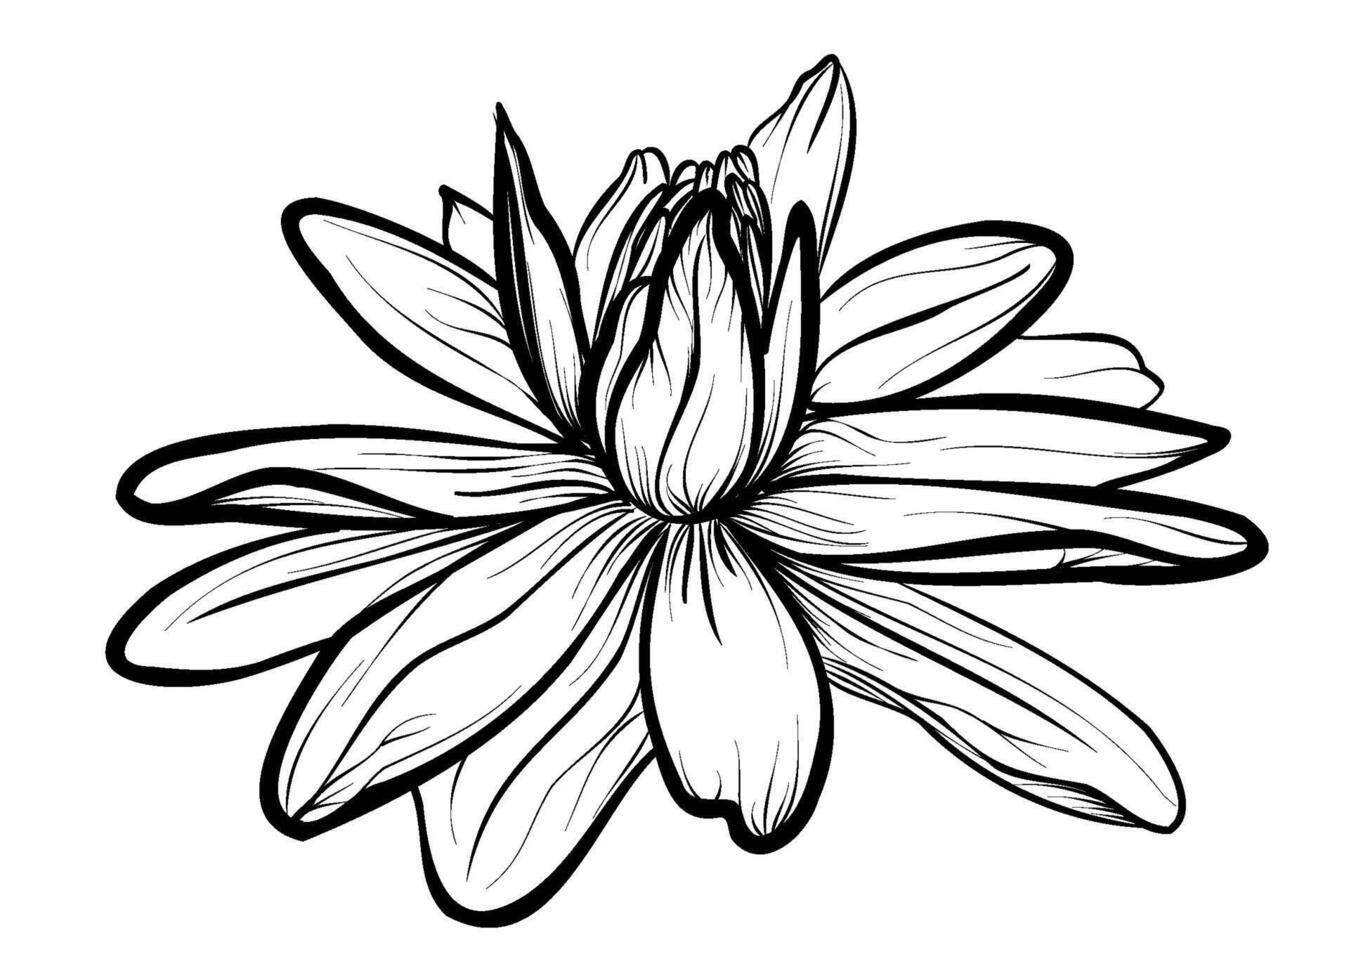 negro y blanco dibujo de un loto flor vector